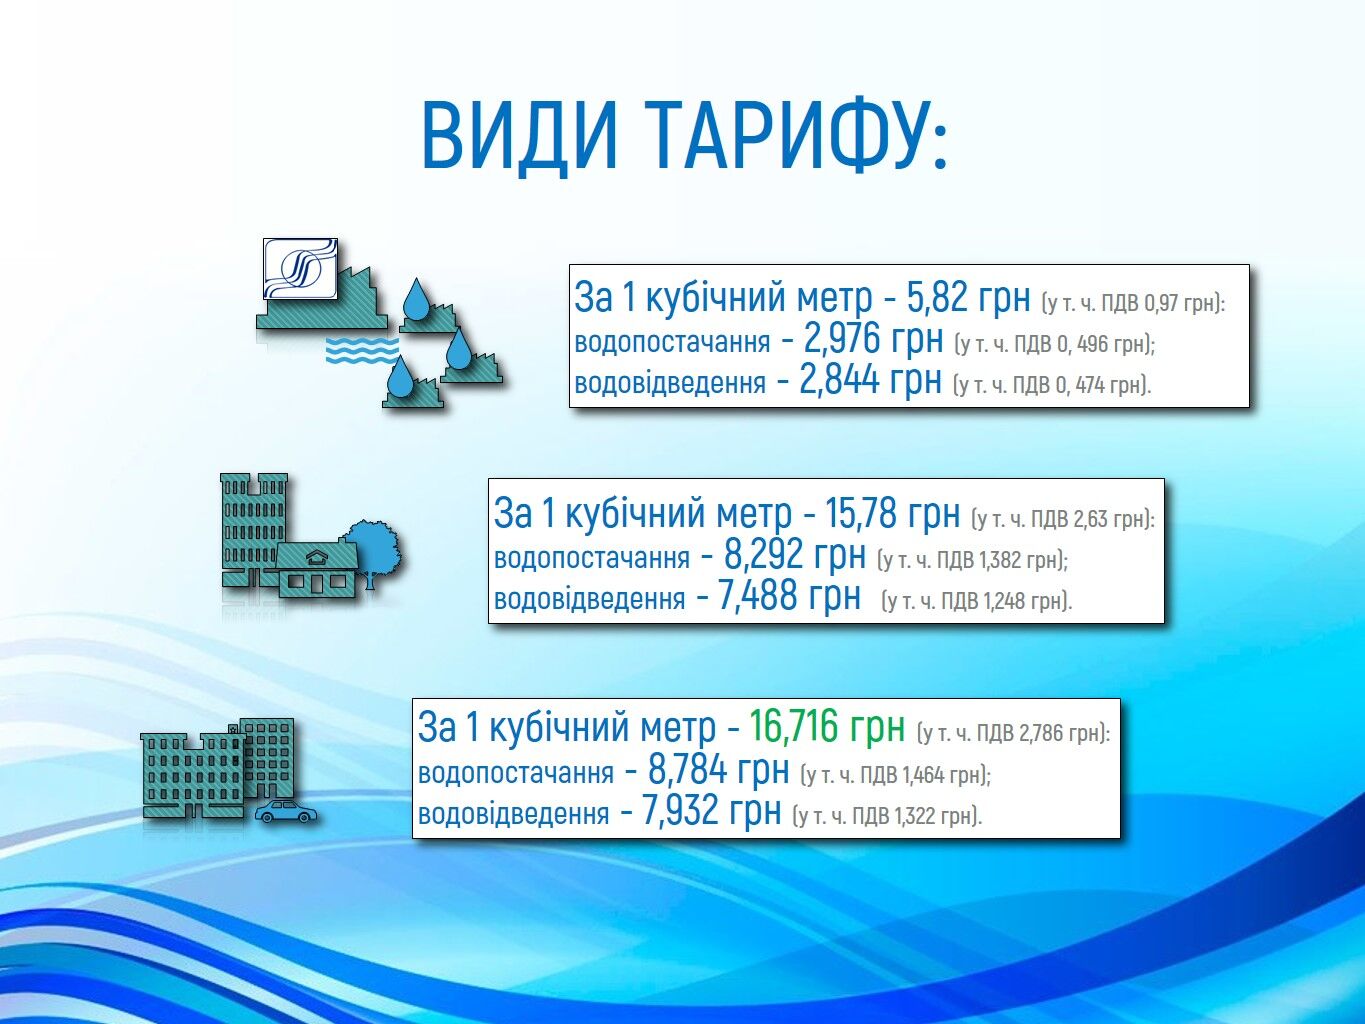 В Киеве вырастут цены на водоснабжение: опубликованы новые тарифы